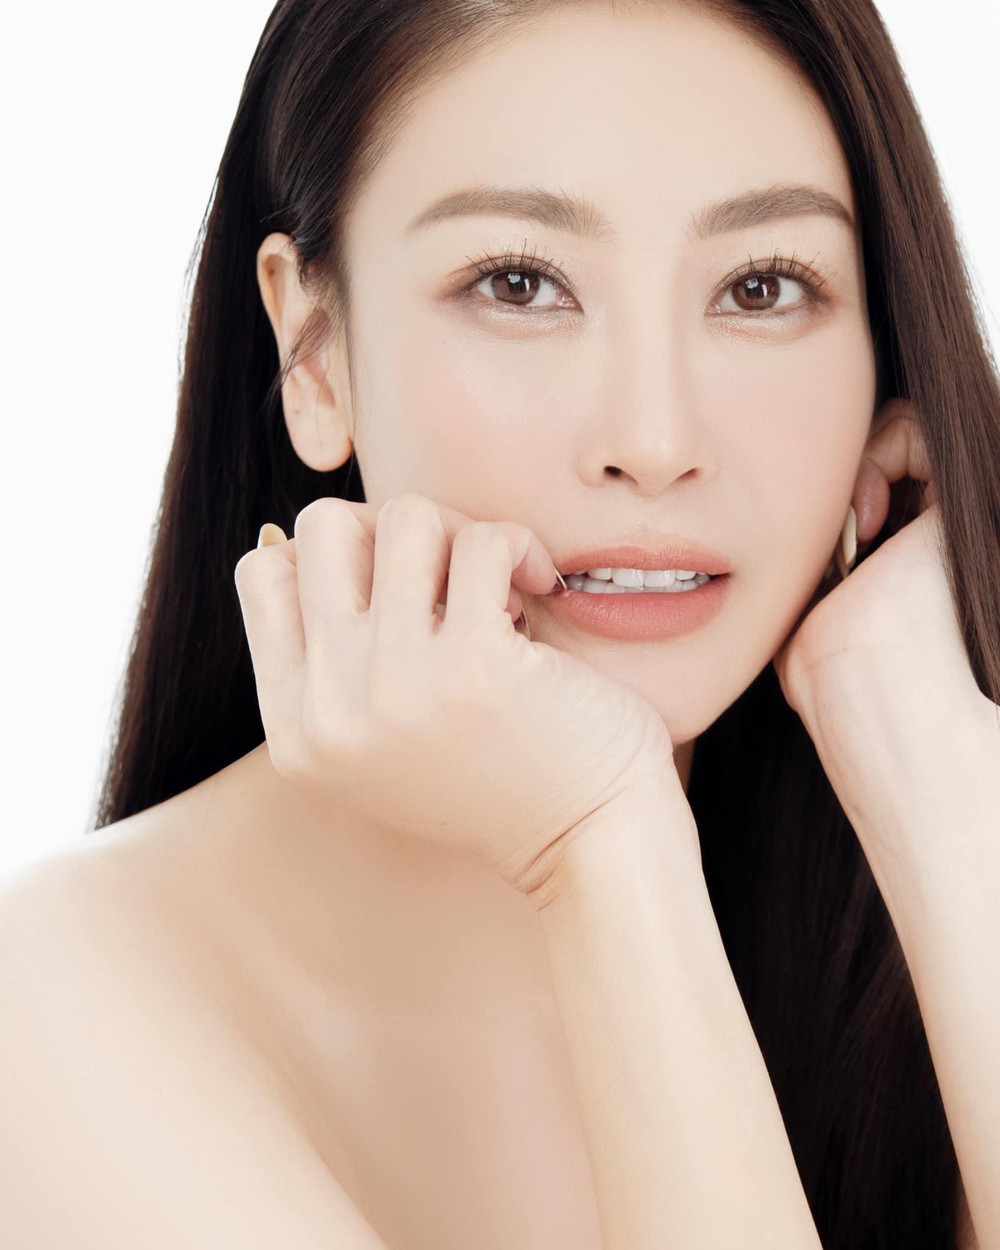 Hoa hậu Hà Kiều Anh ở tuổi 45: Từ nhan sắc đến vóc dáng đỉnh cao khiến đàn em ngưỡng mộ - Ảnh 2.